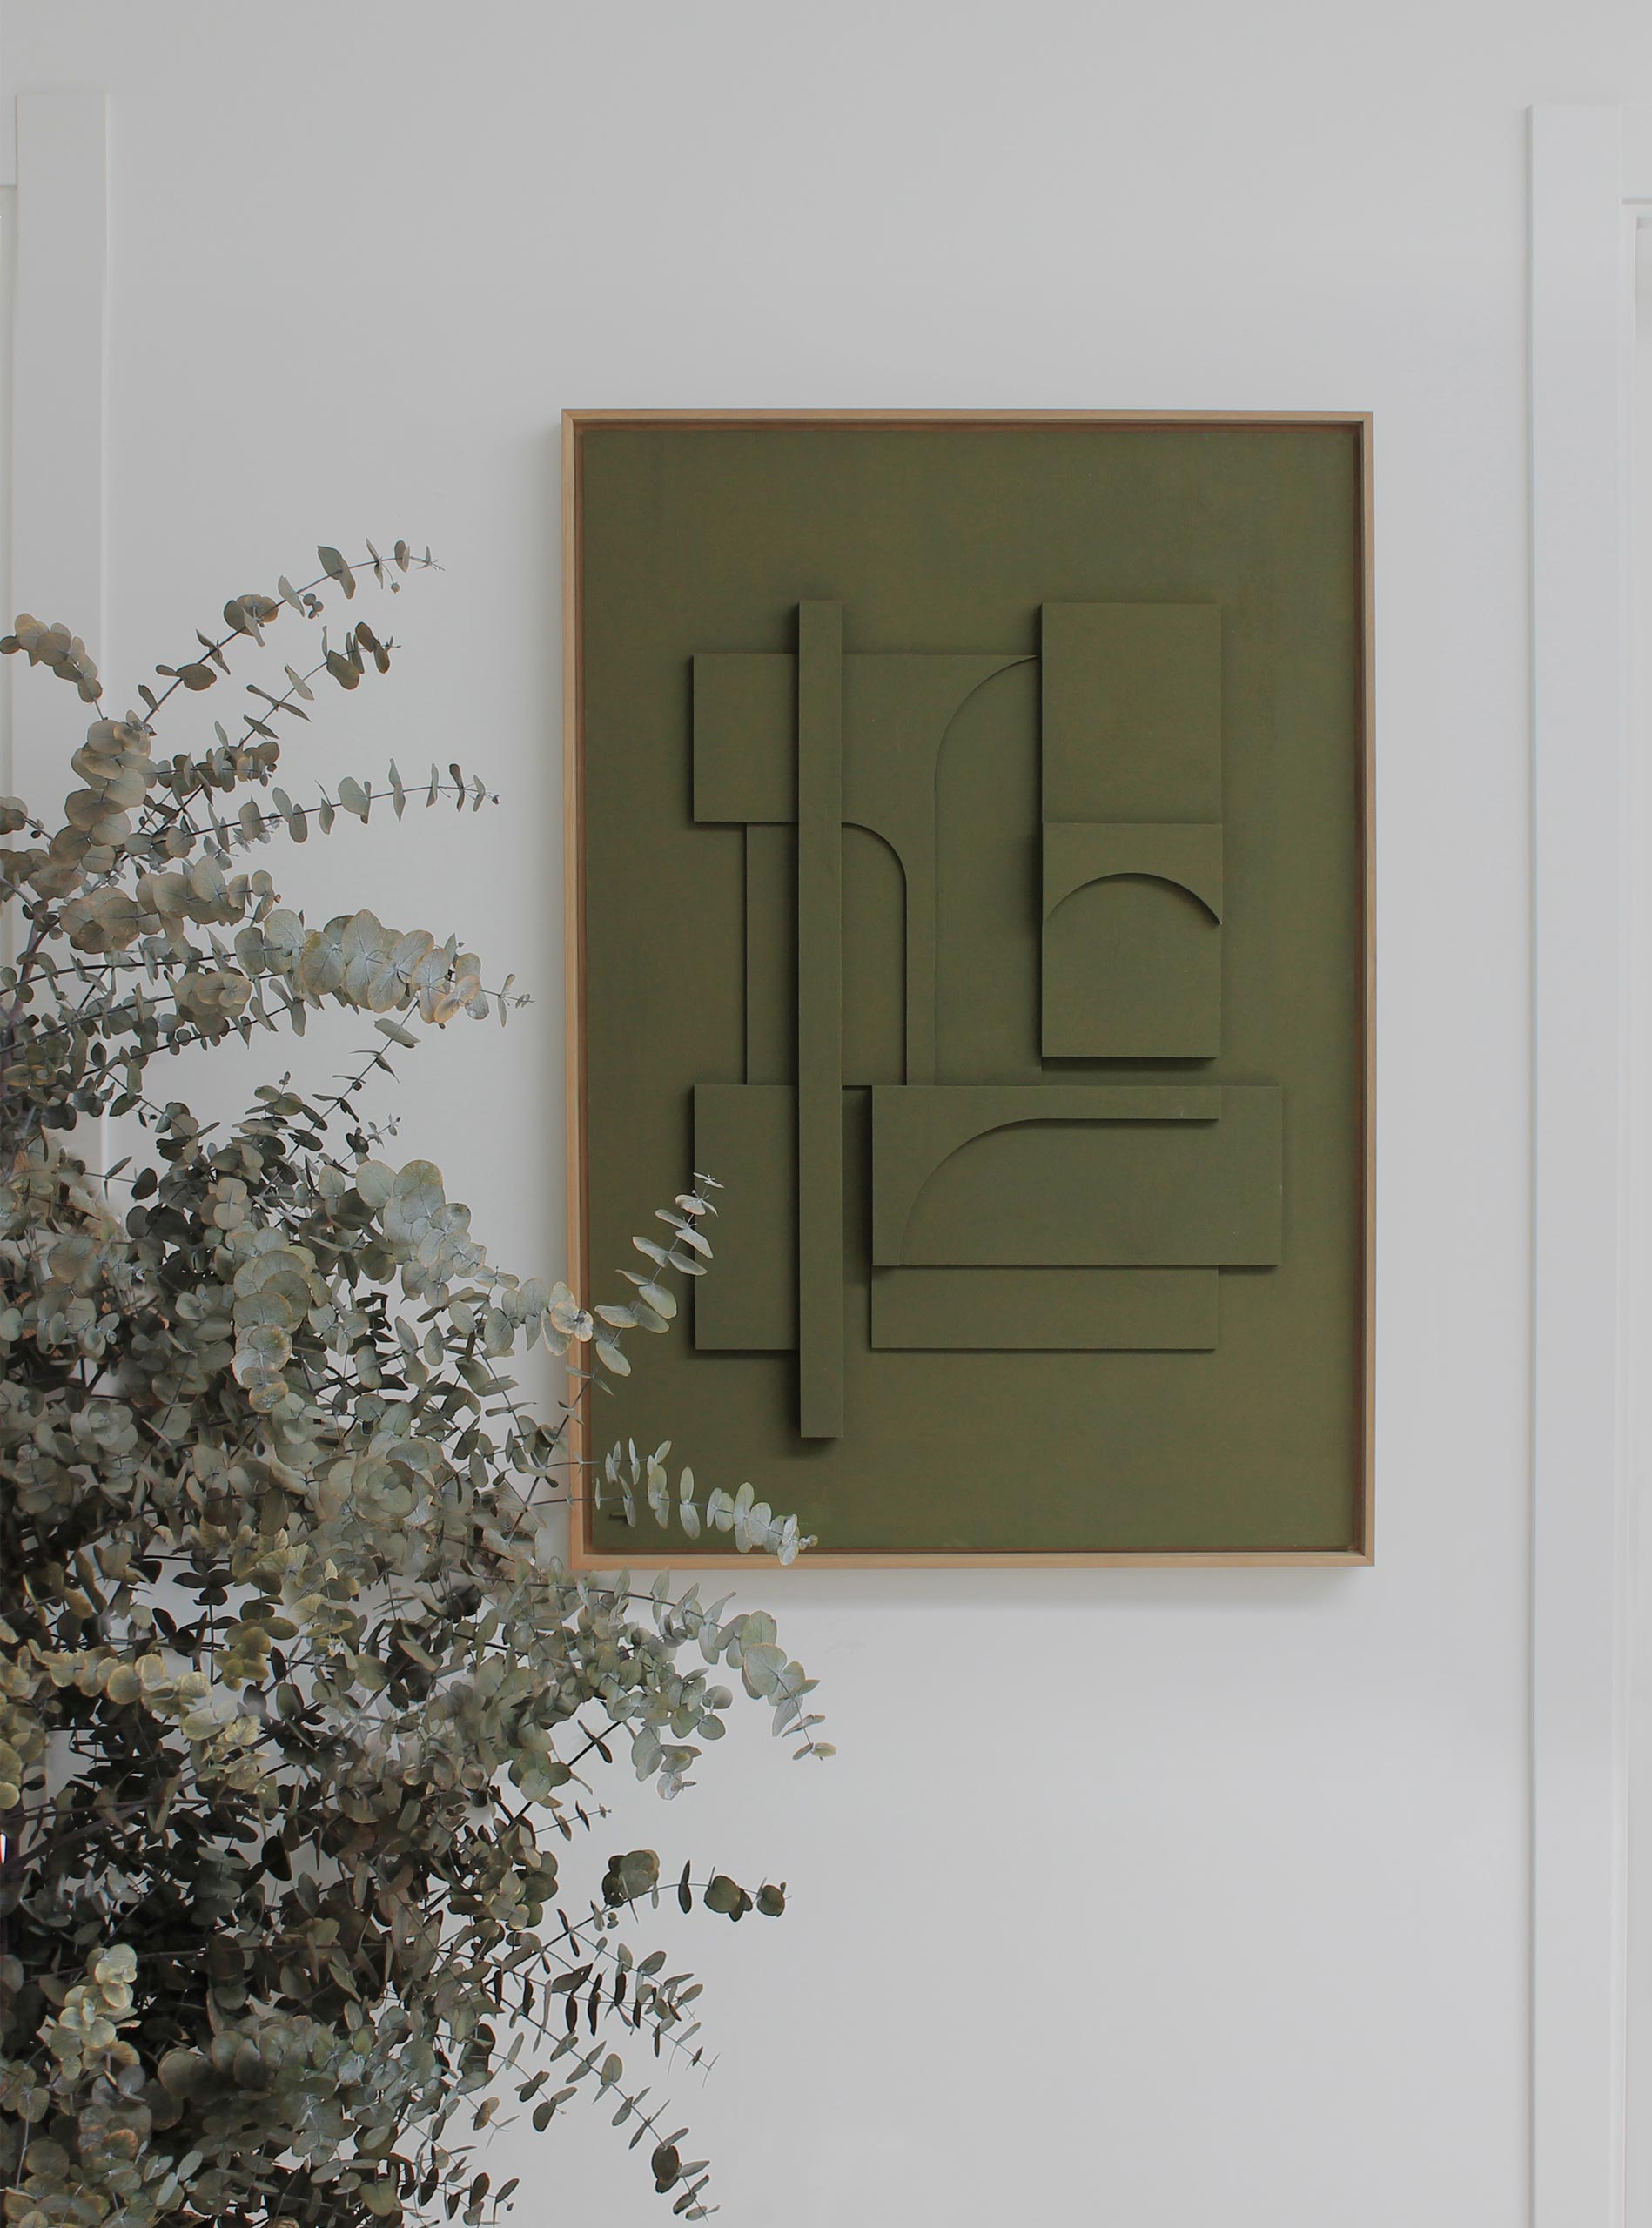 Cuadro grande verde para salón. Obra de arte contemporáneo para casas modernas, minimalistas. Autoría: Teresa Darocas.